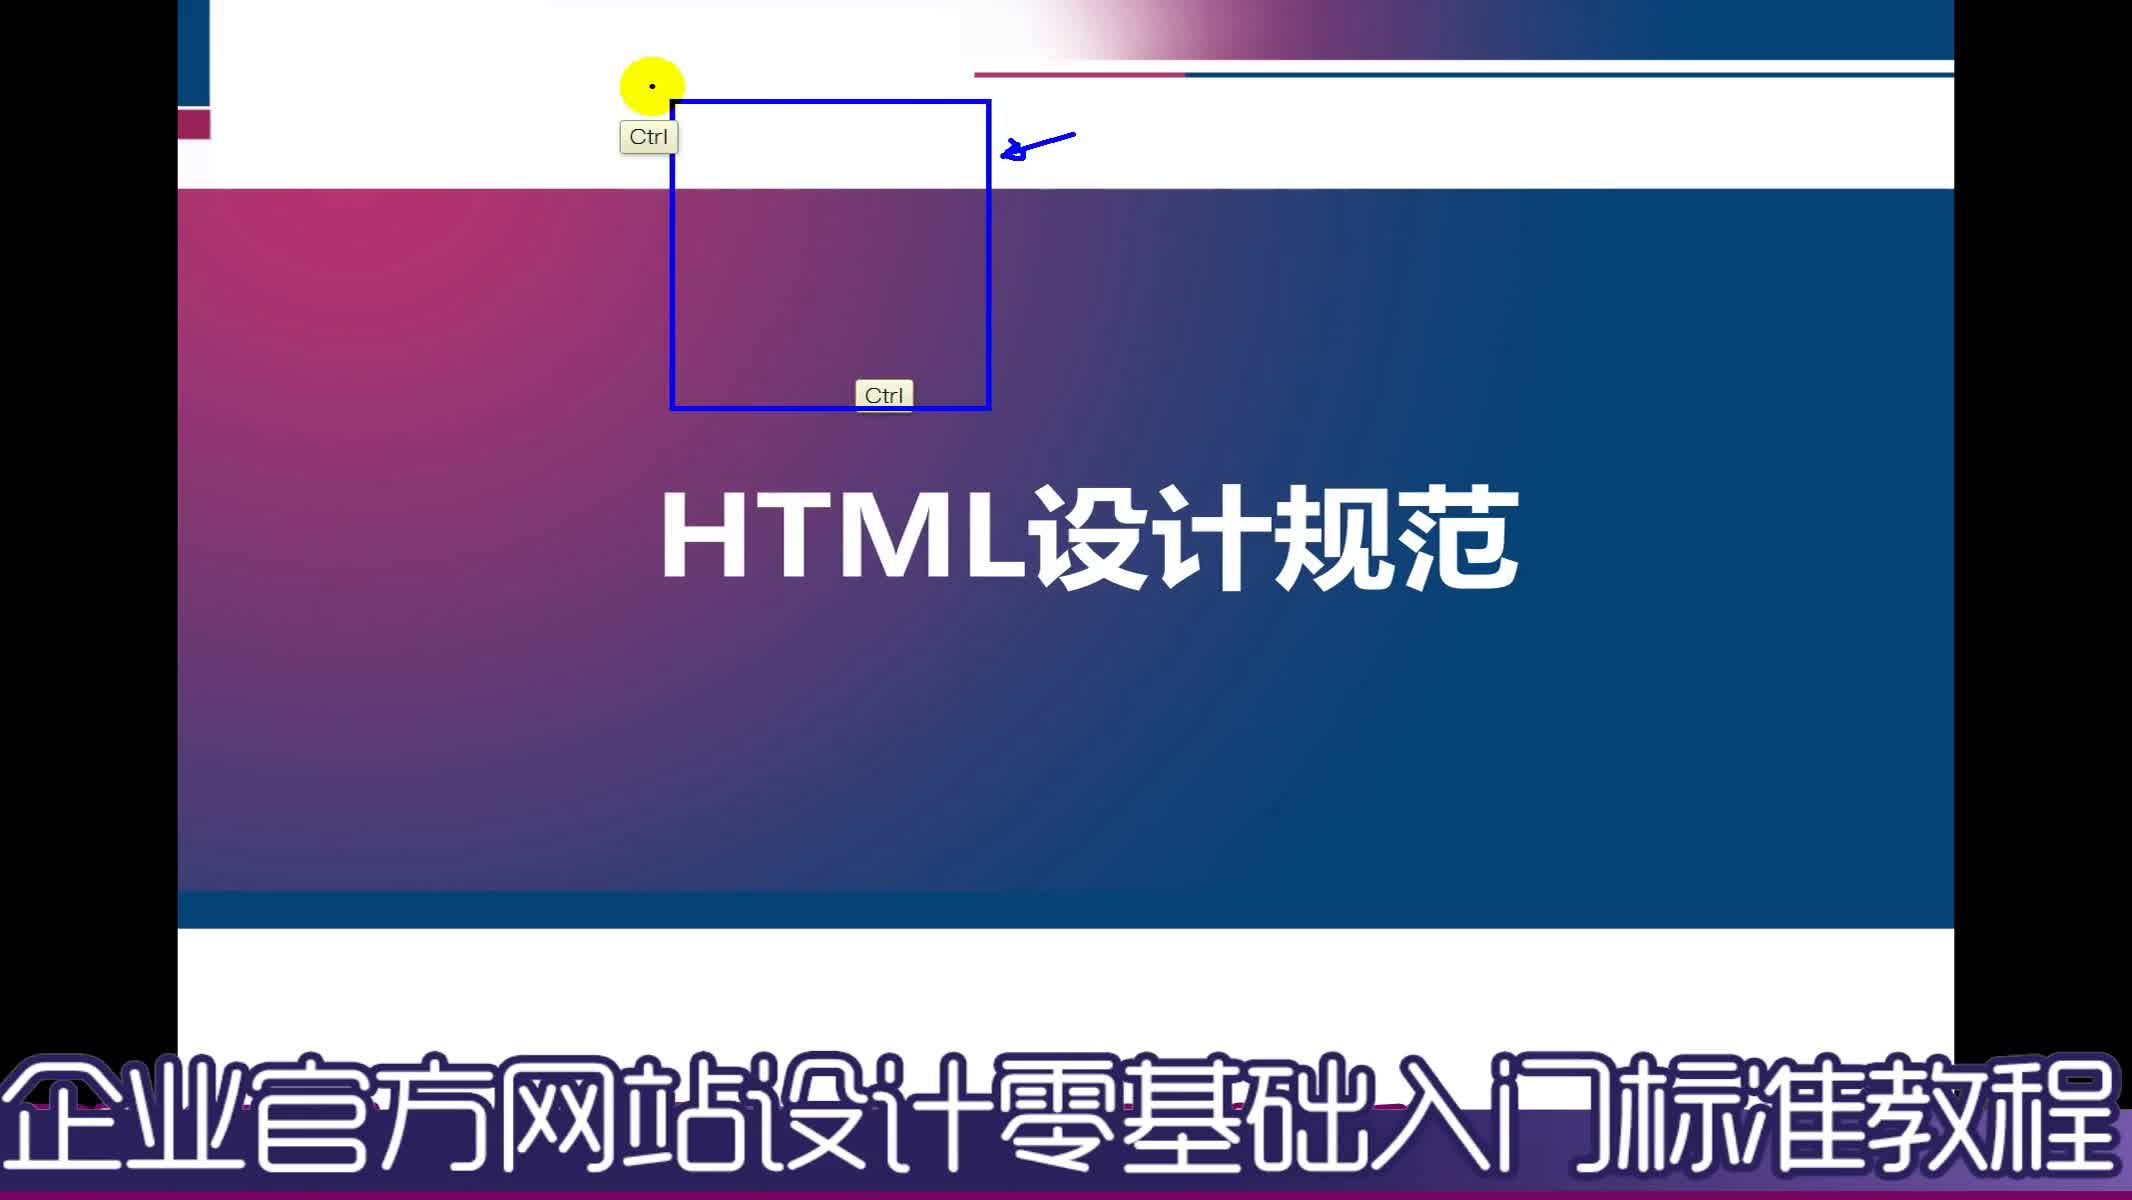 【吴刚】企业官方网站设计初级入门标准教程